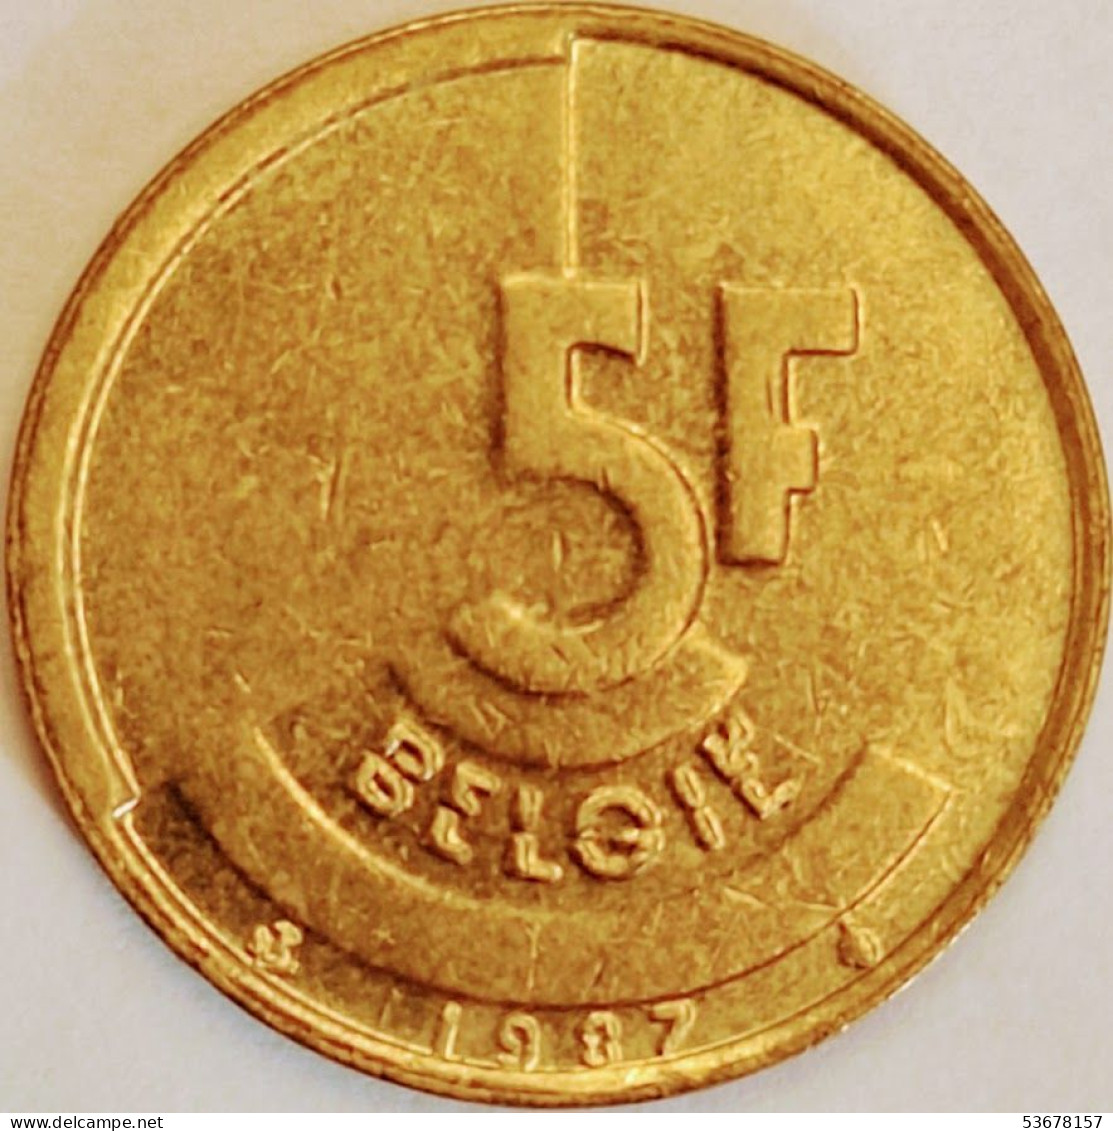 Belgium - 5 Francs 1987, KM# 164 (#3195) - 5 Francs